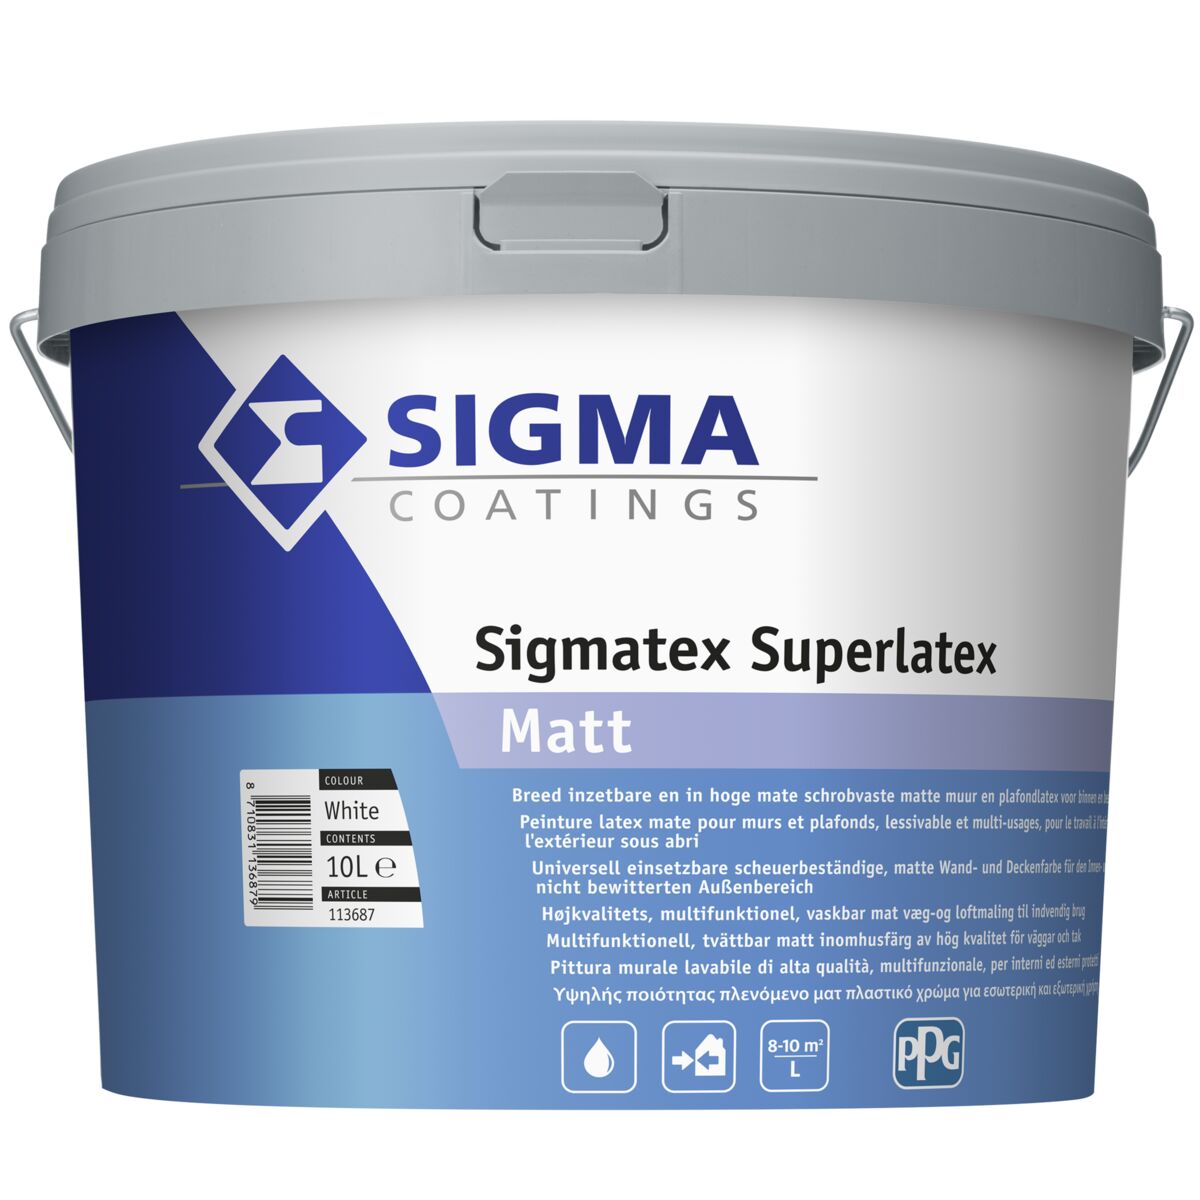 Aan tetraëder shuttle Sigmatex Superlatex Matt - Sigma.be